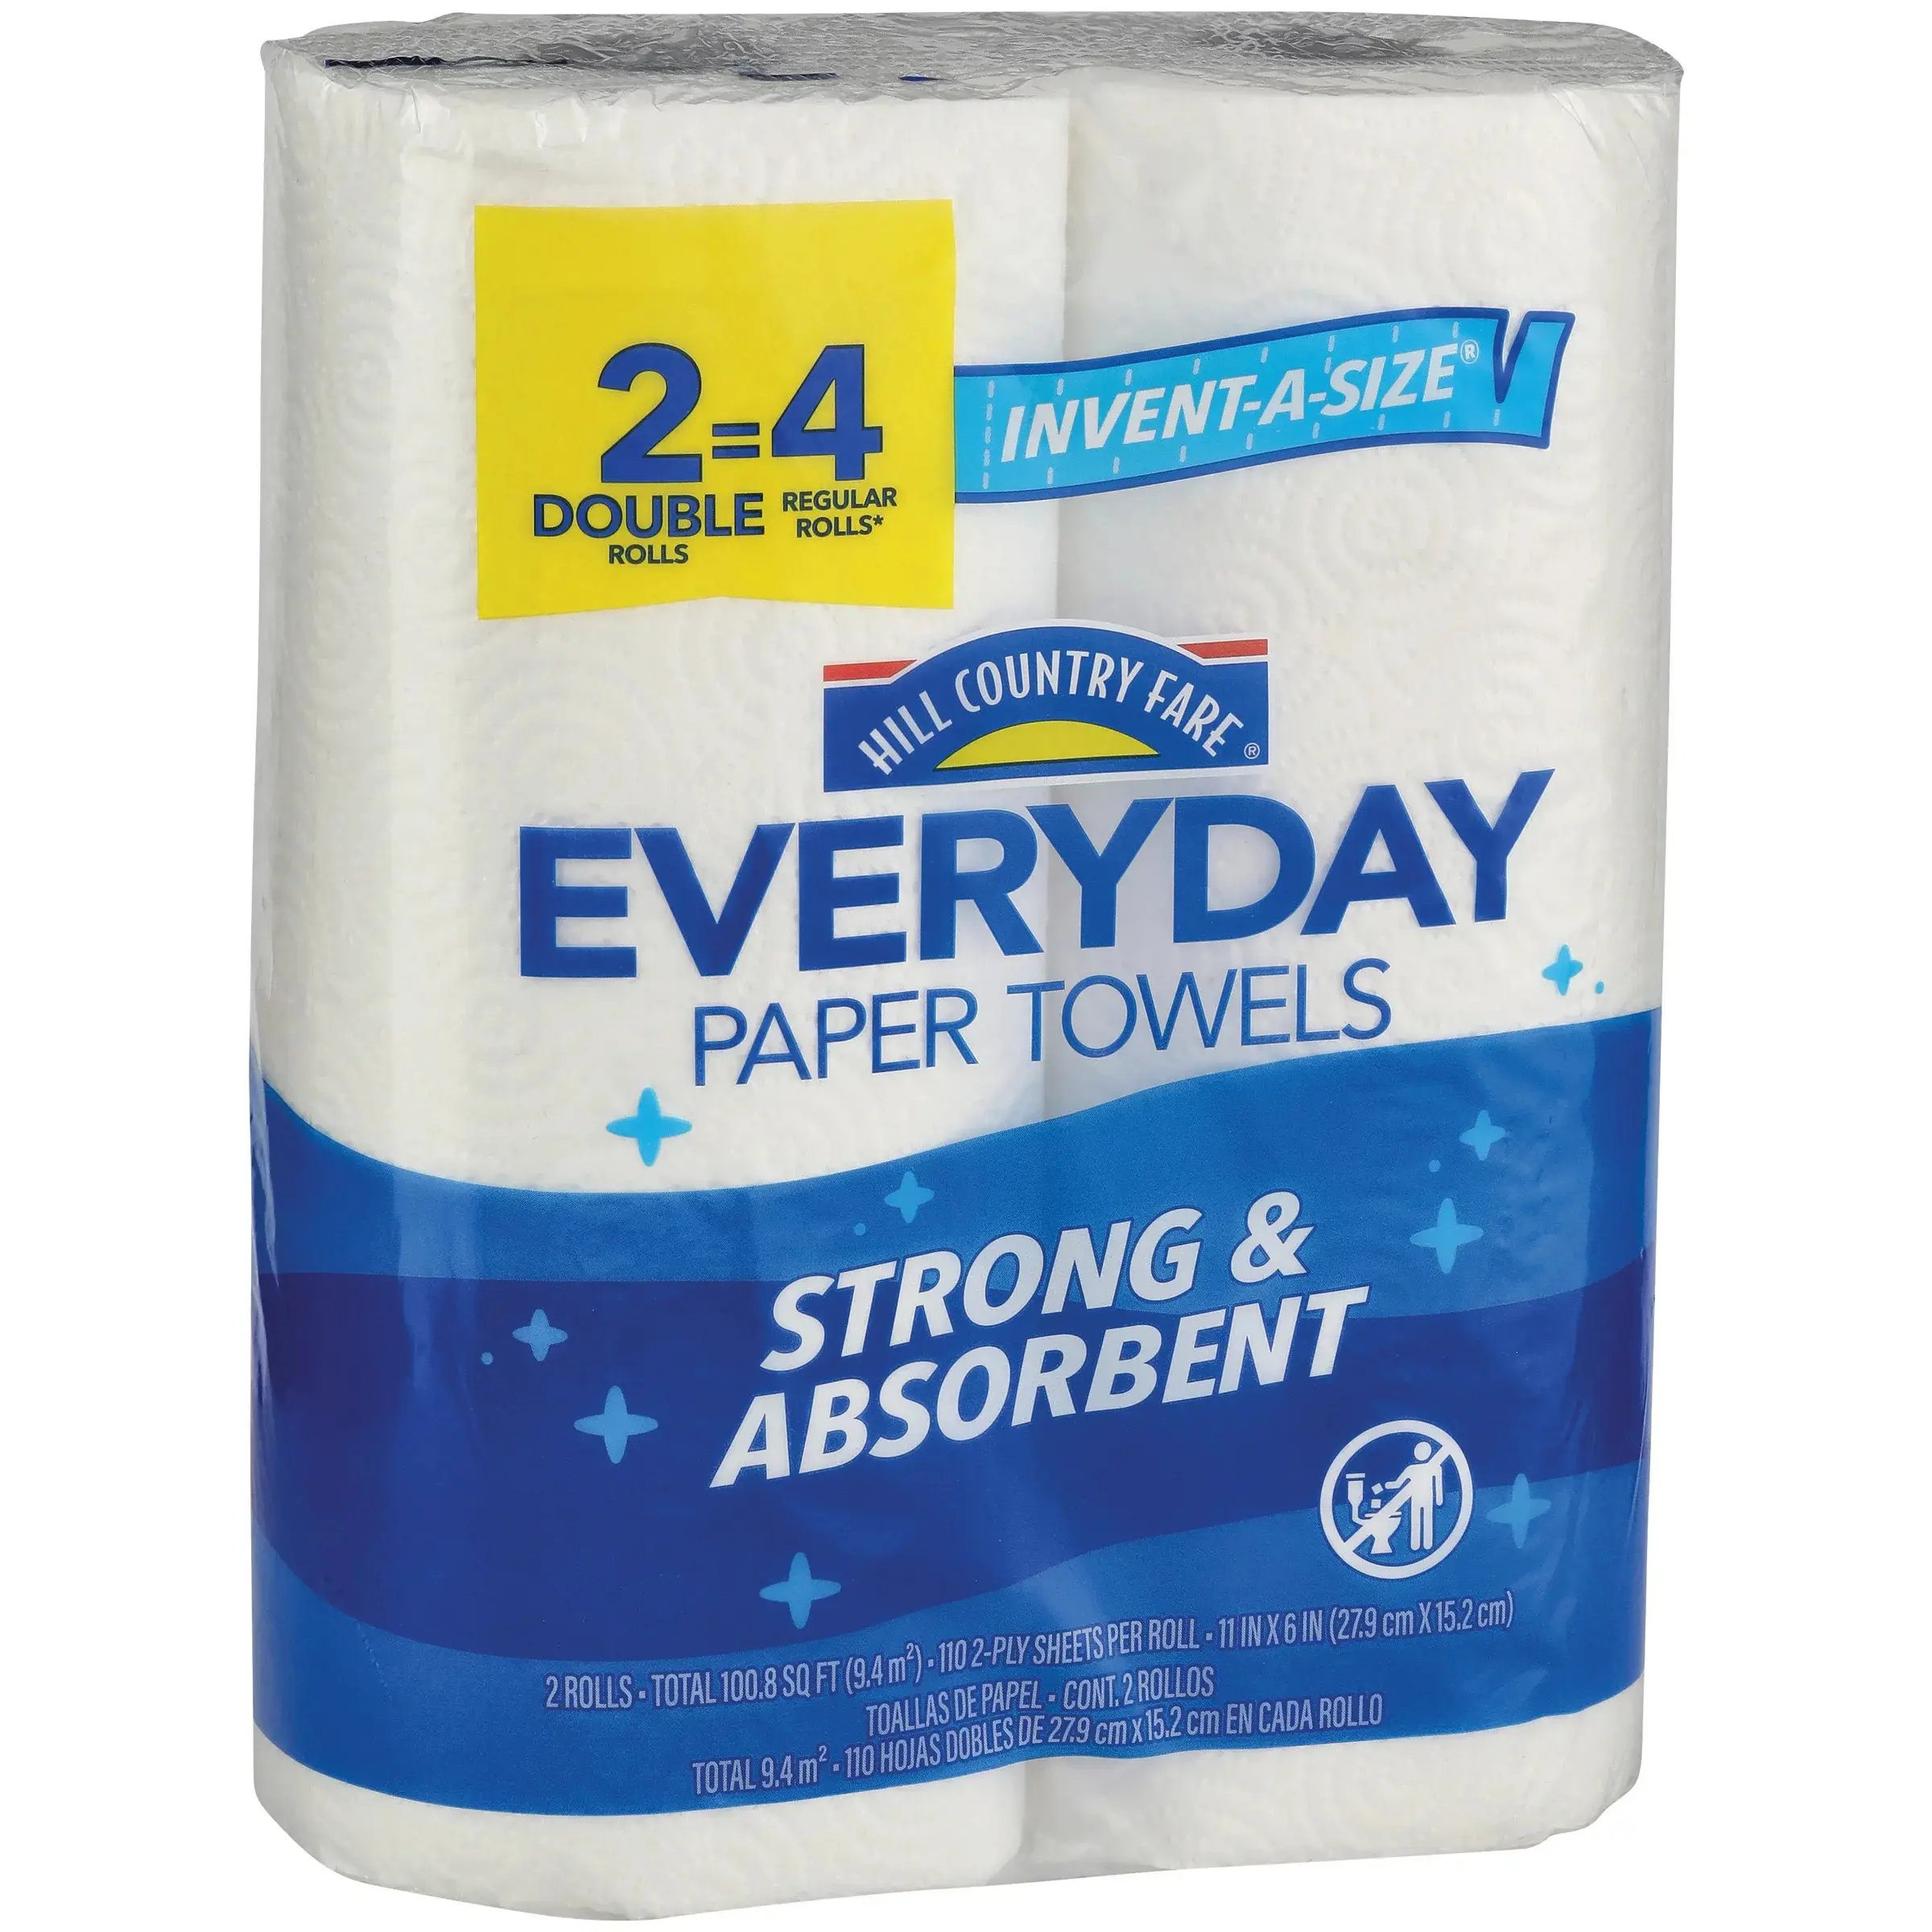 Dove comprare qualità doppio un quadrato asciugamani di carta utilizzati per la cucina di tutti i giorni e la pulizia della casa